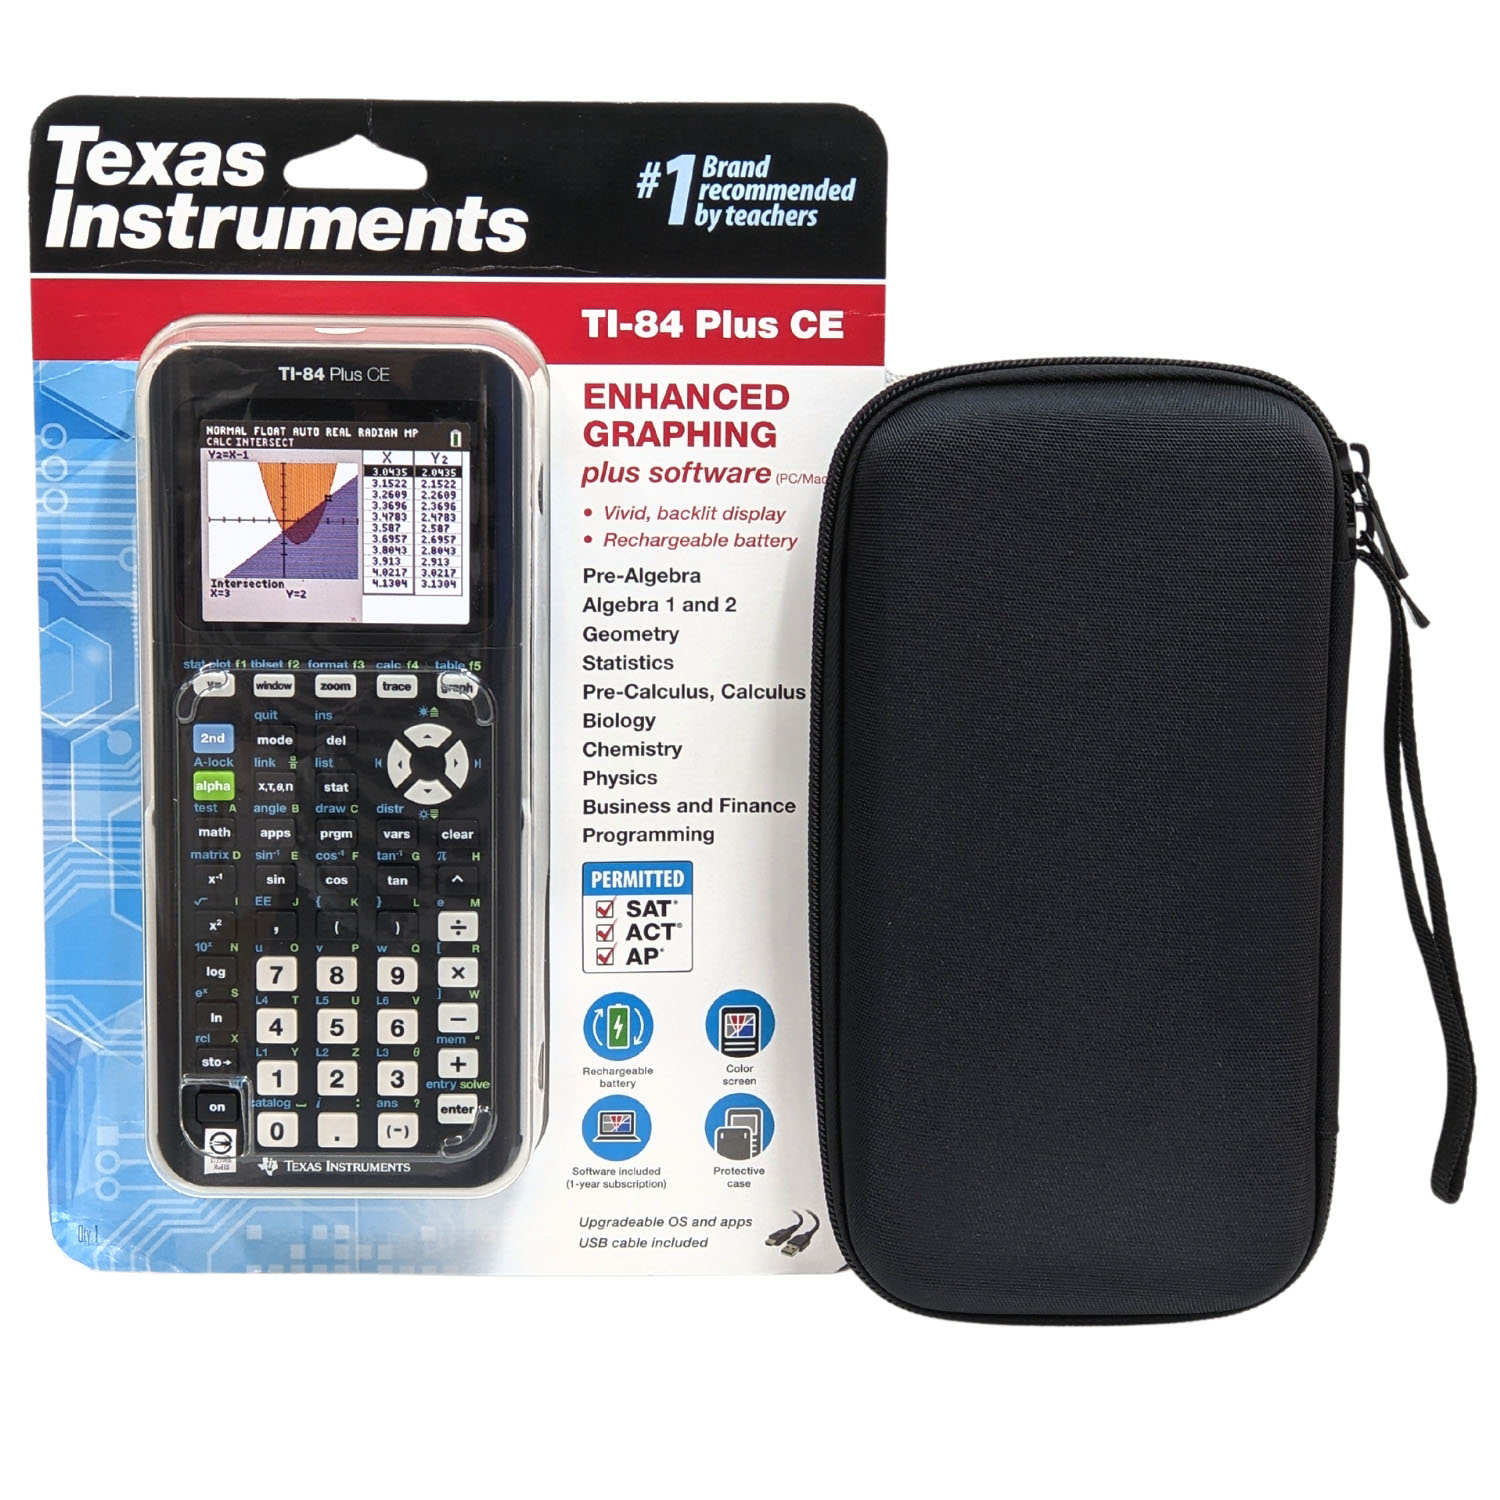 [商檢認證D35986] Texas Instruments TI-84 Plus CE 黑+收納包 計算機 1年保固少量現貨_TT1